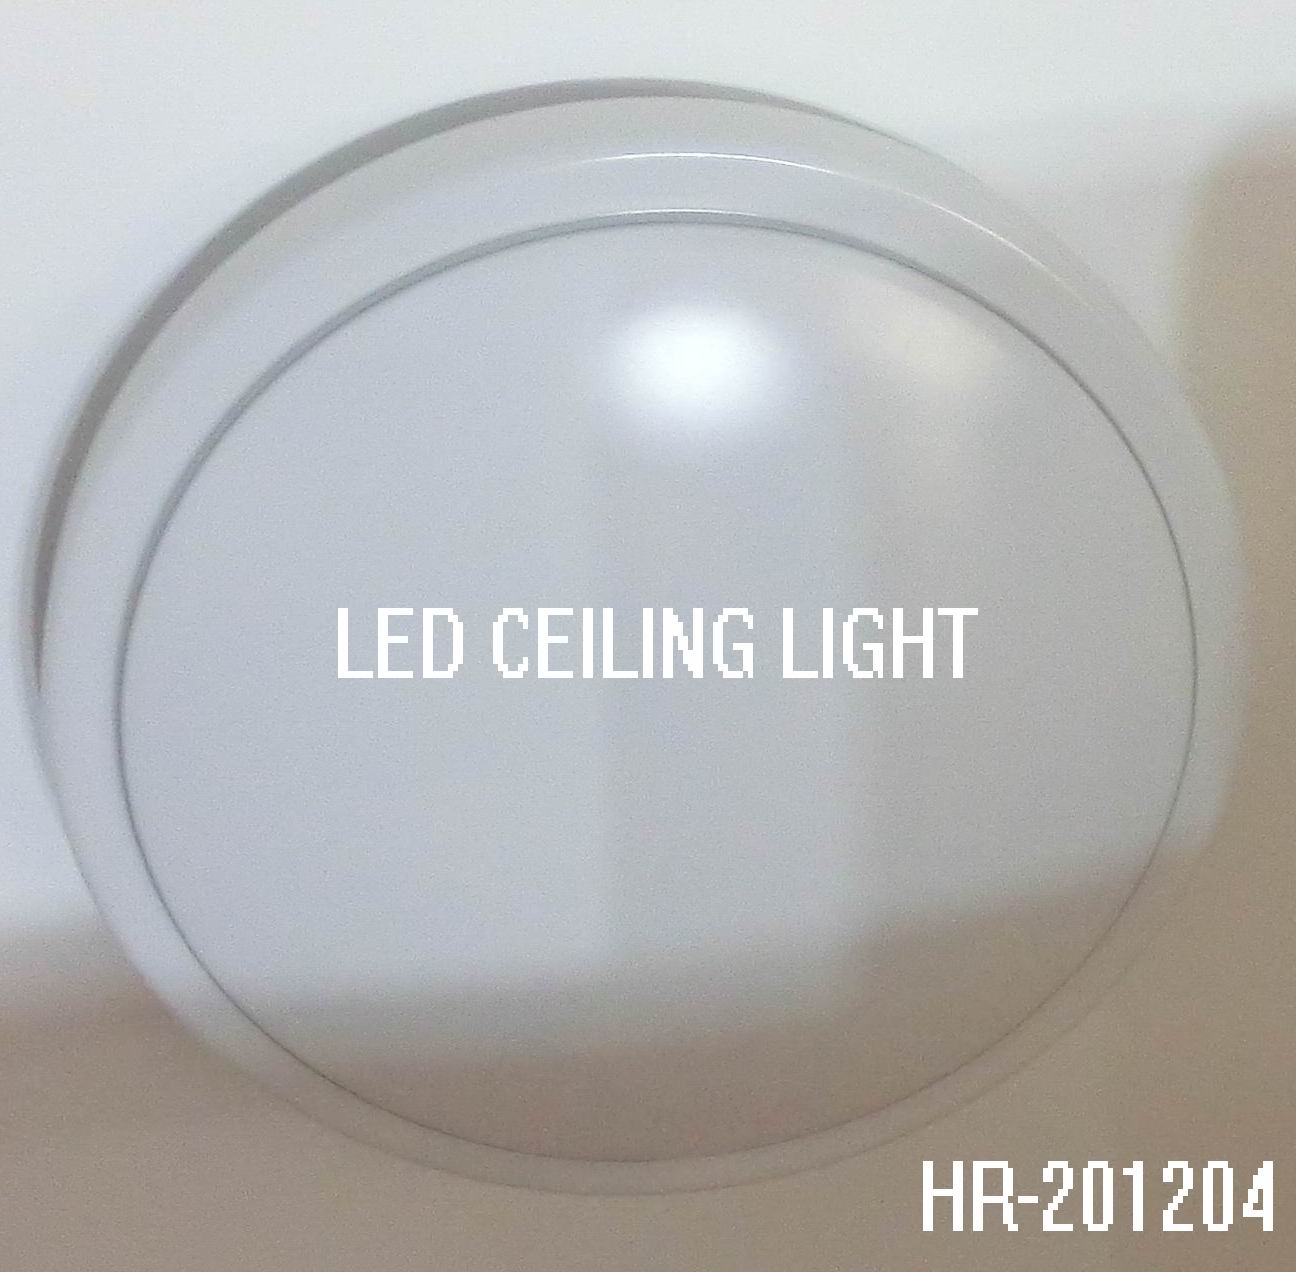 LED CEILING LIGHT HR-201204Spec:Unit: